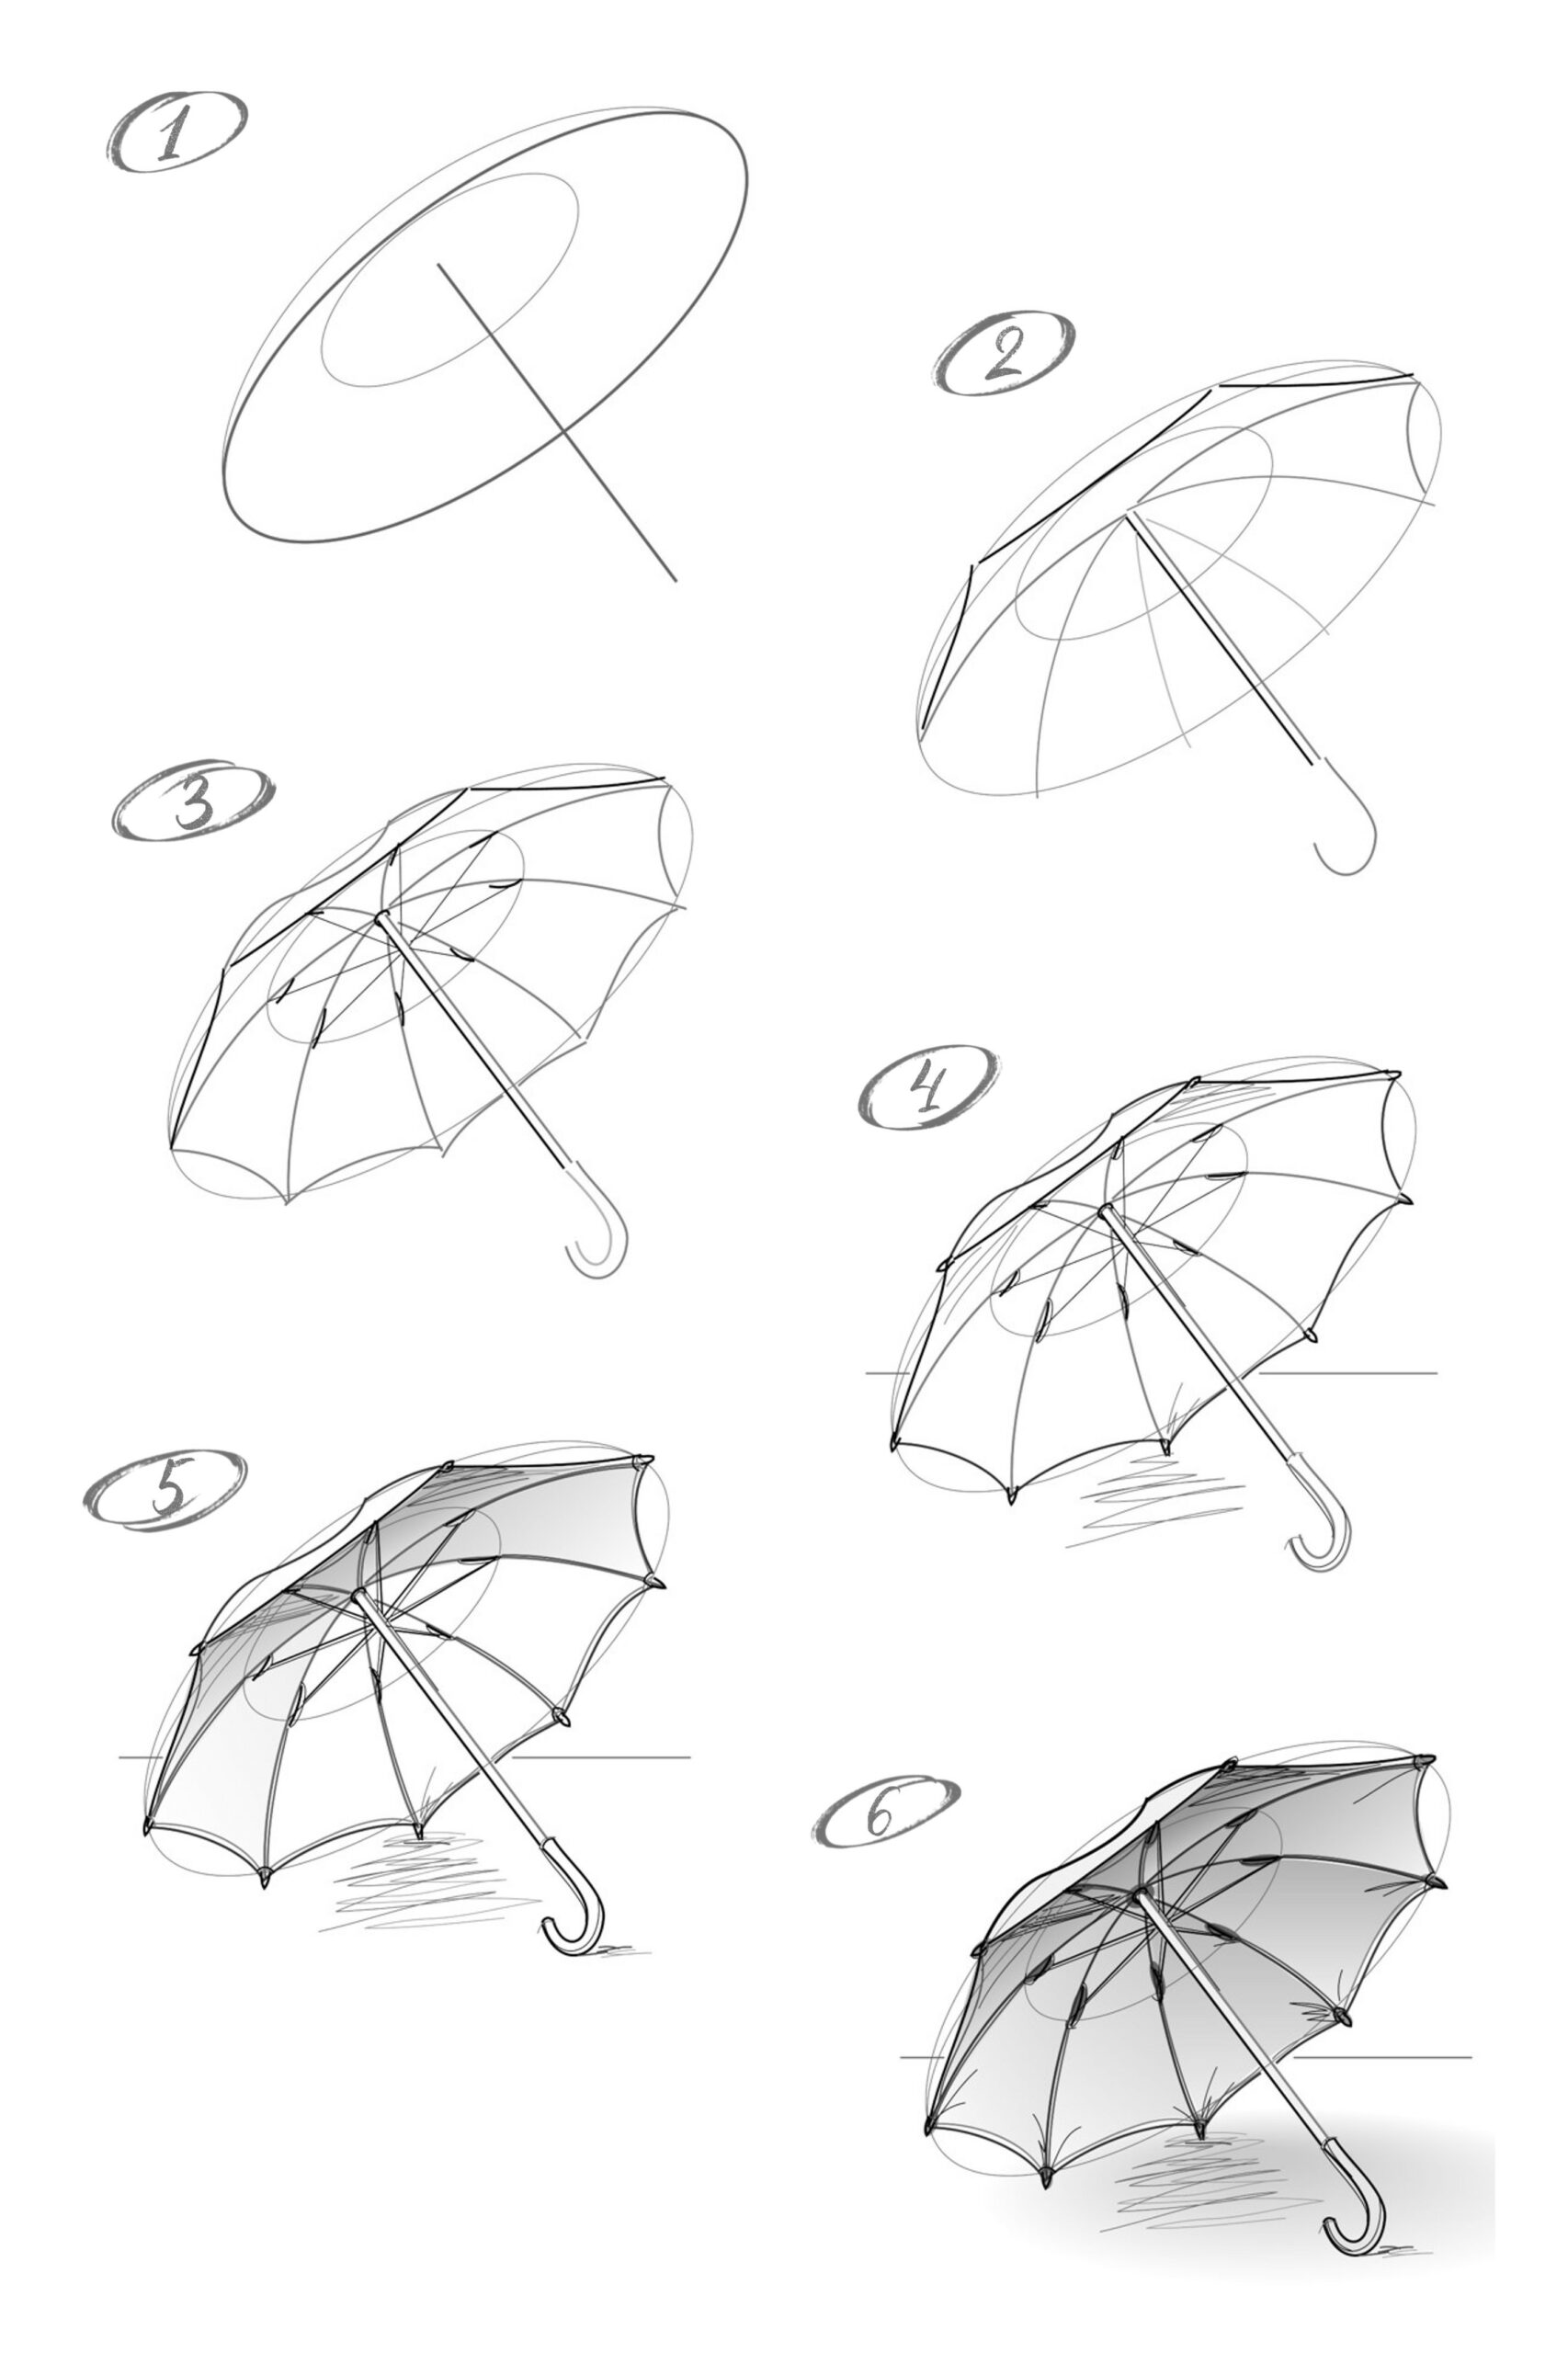 Umbrella idea 7 Drawing Ideas